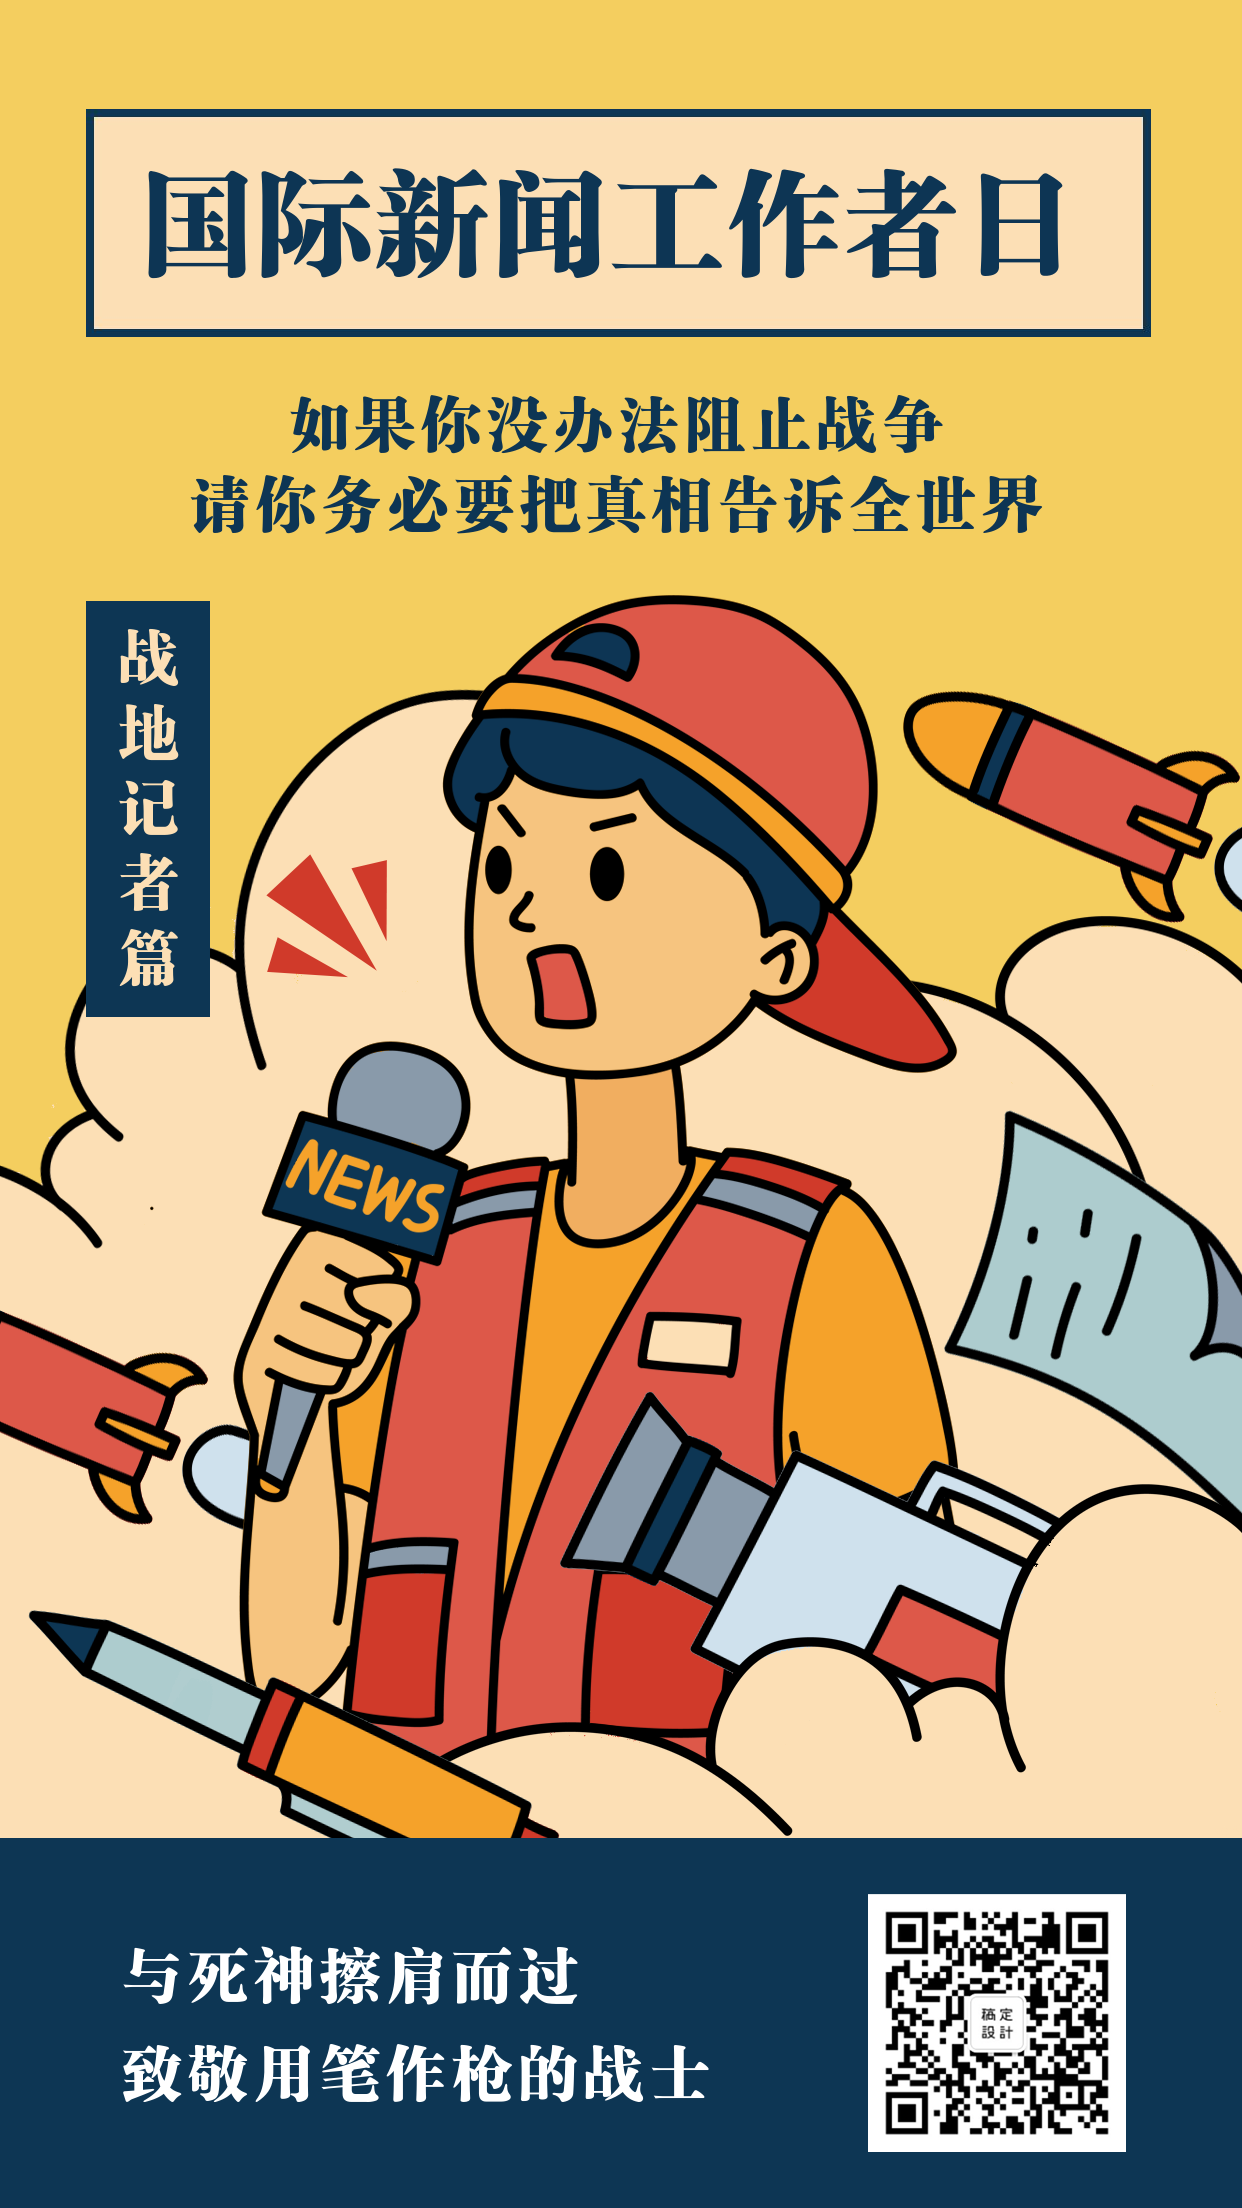 国际新闻工作者日/中国记者节节日祝福手绘手机海报预览效果